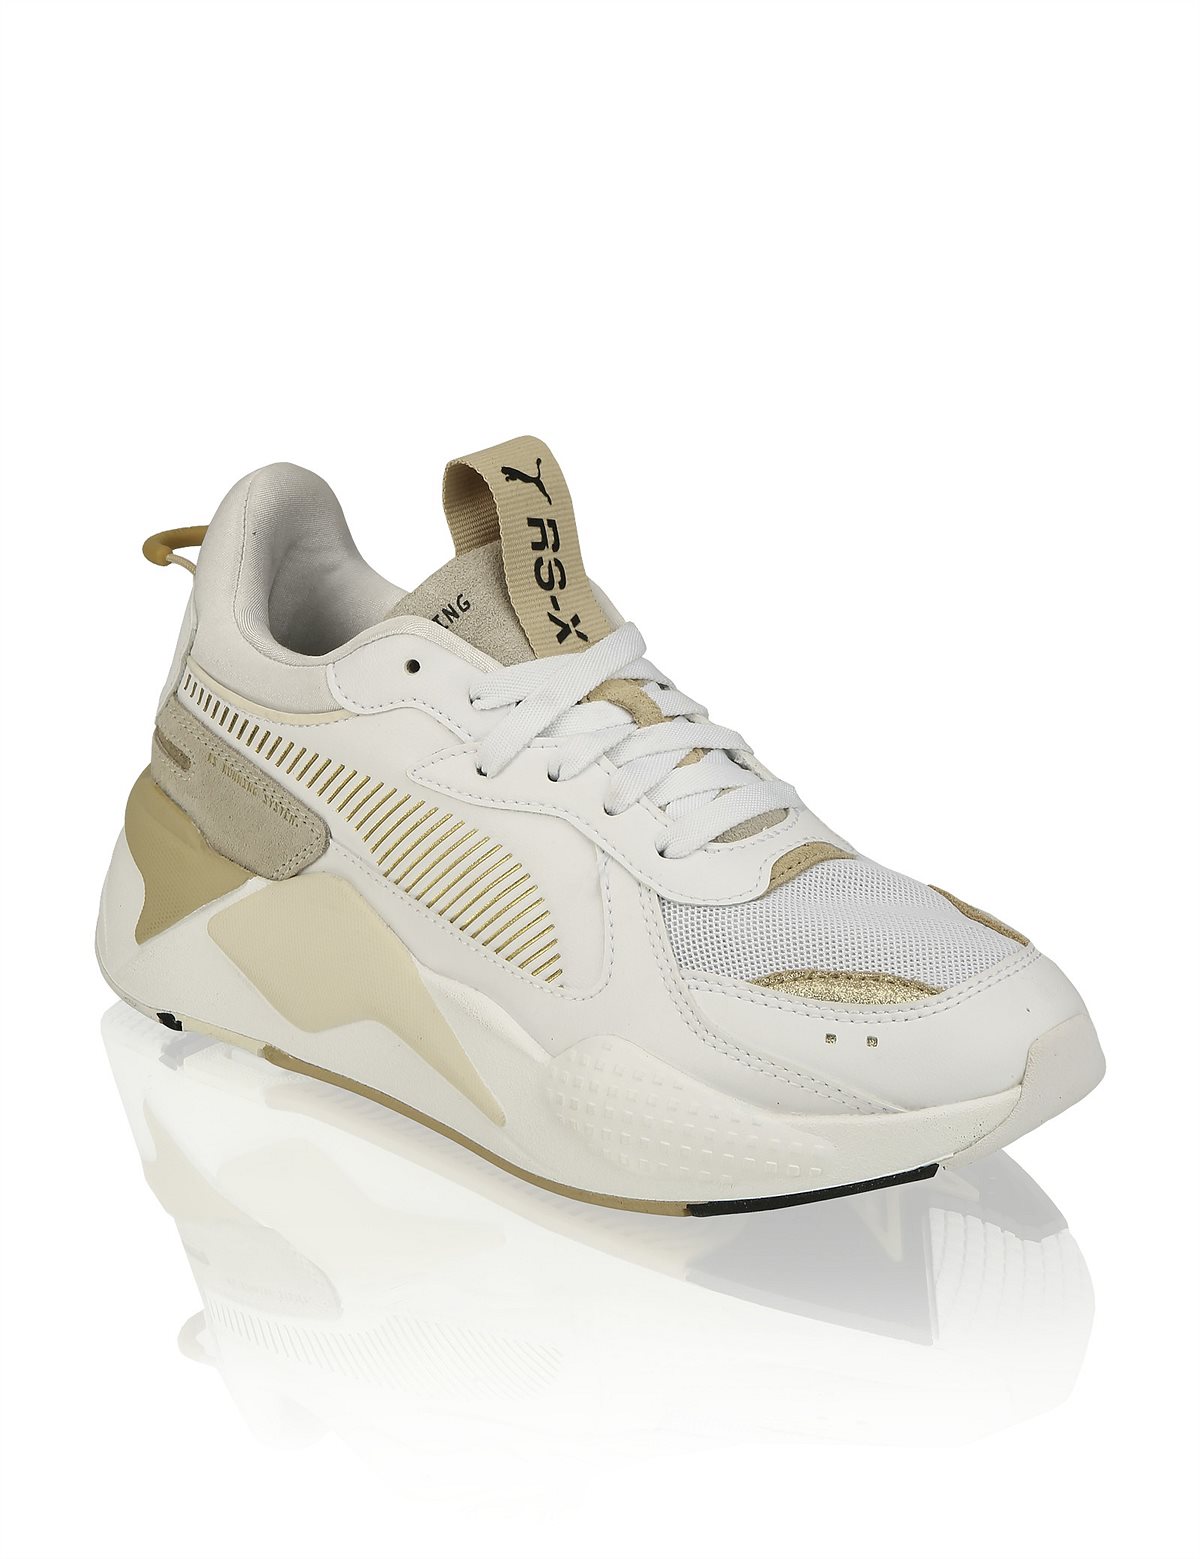 HUMANIC 03 Puma RS X Lederkombi-Sneaker EUR 110 1711140145